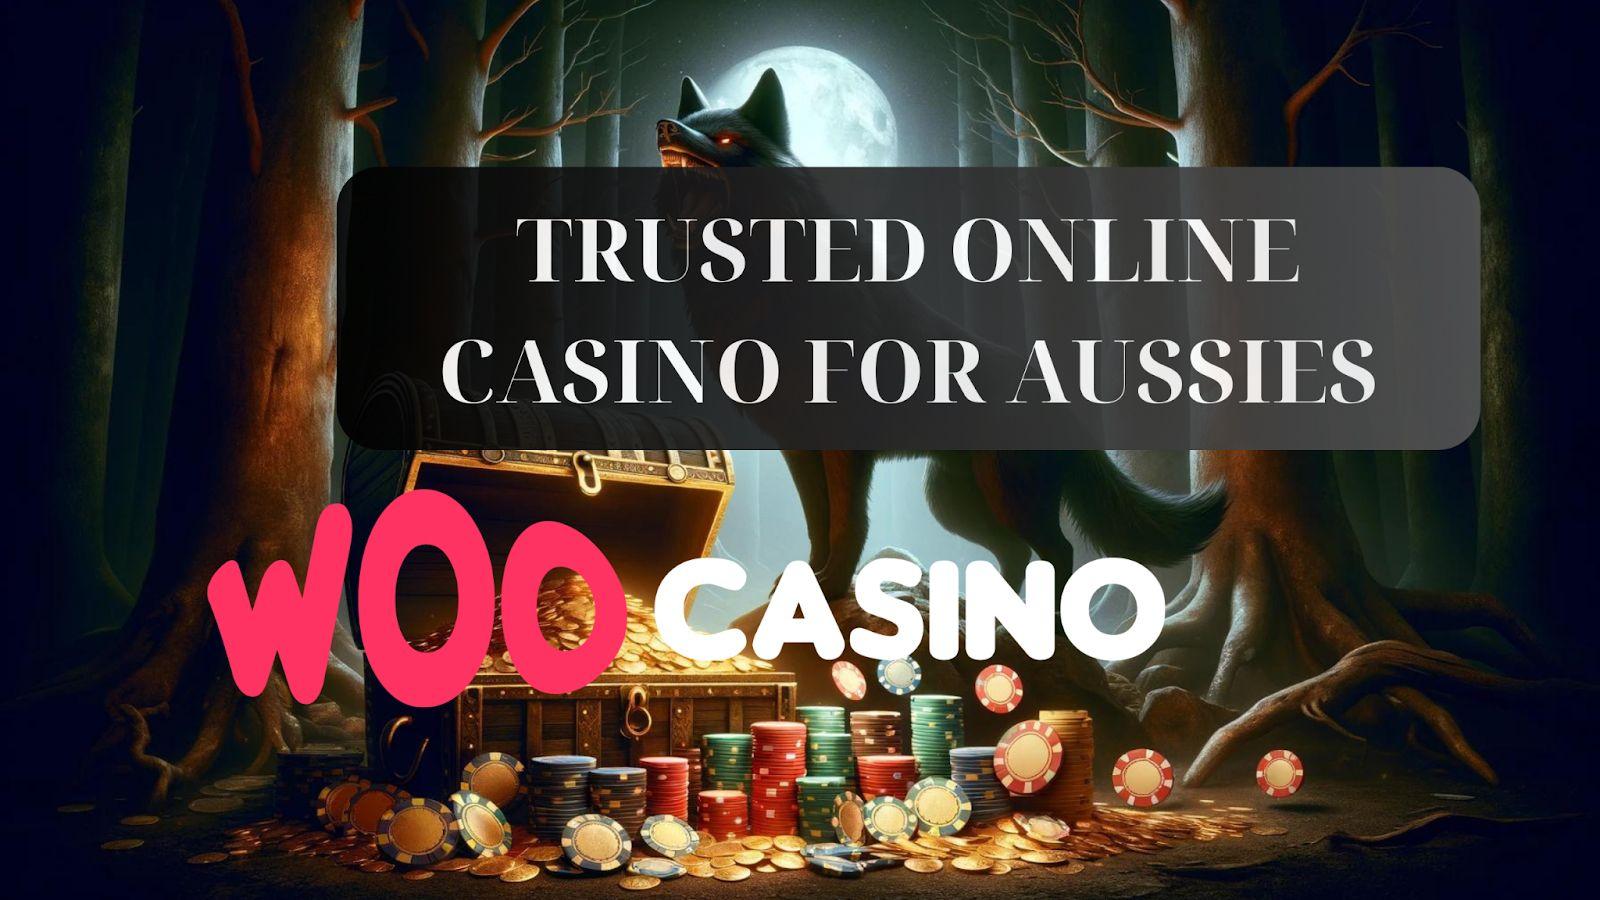 Woo Casino - zaufany wybór Australijczyków